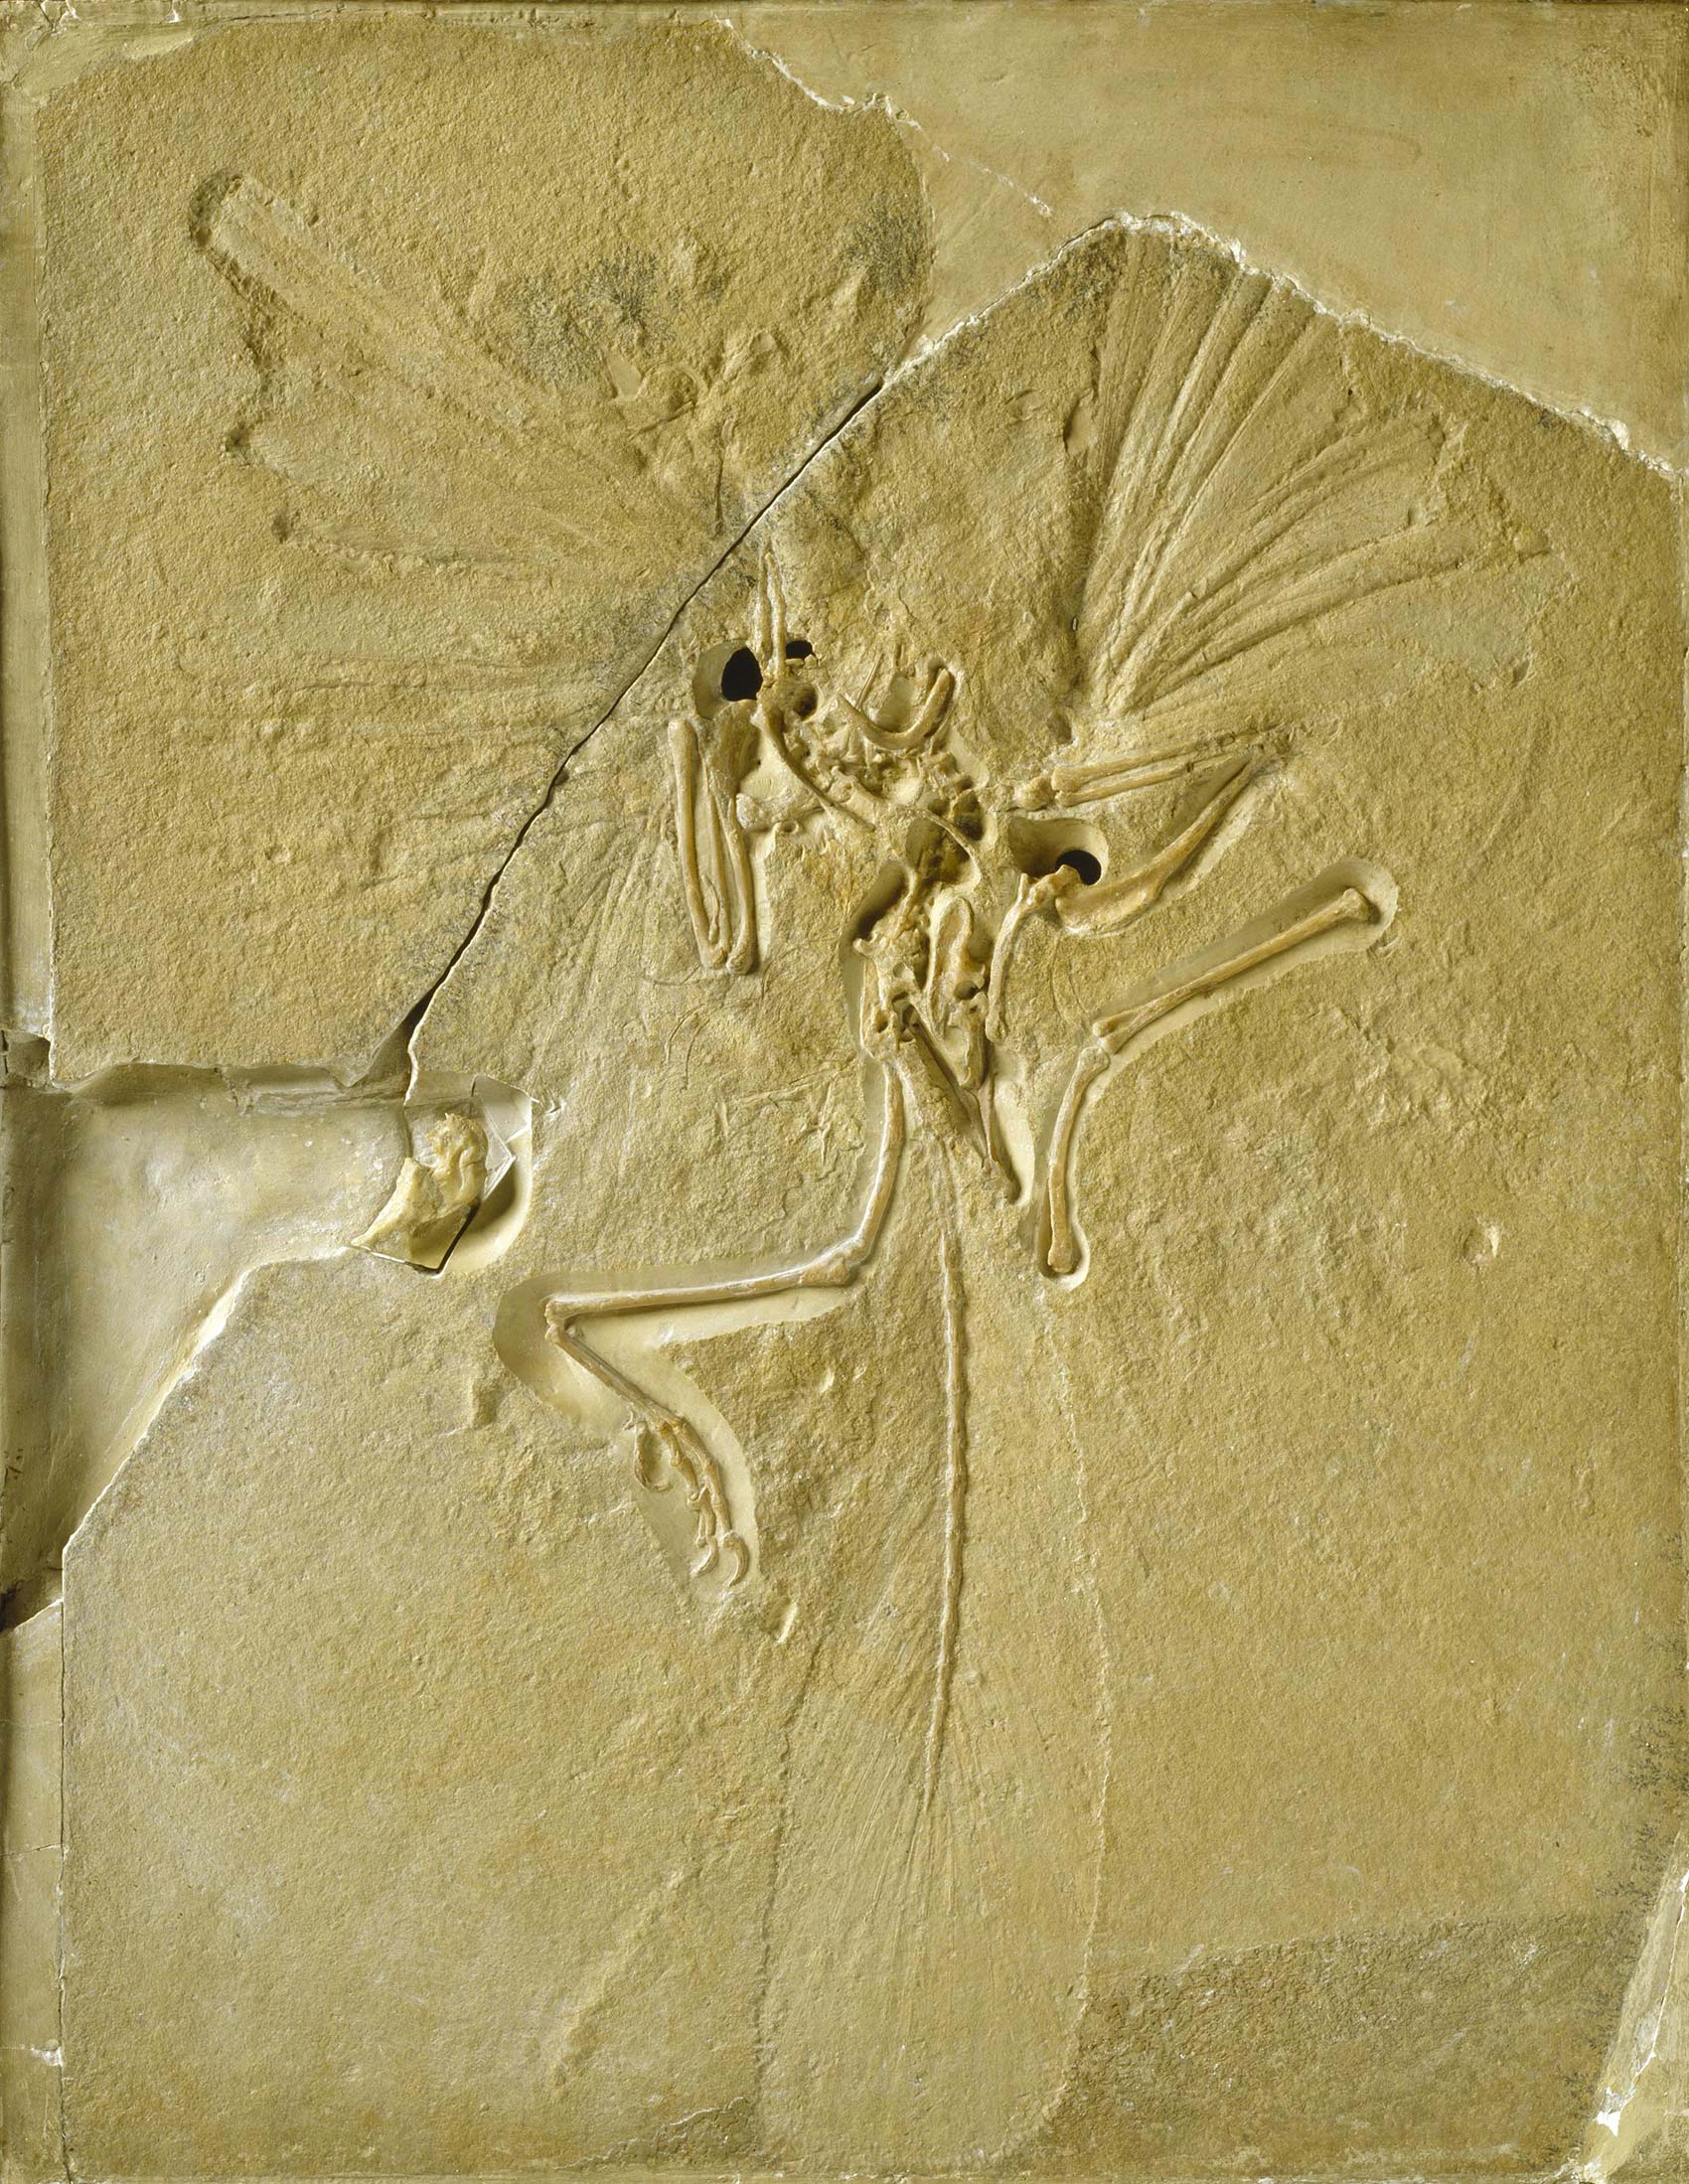 始祖鳥 ©The Trustees of the Natural History Museum, London